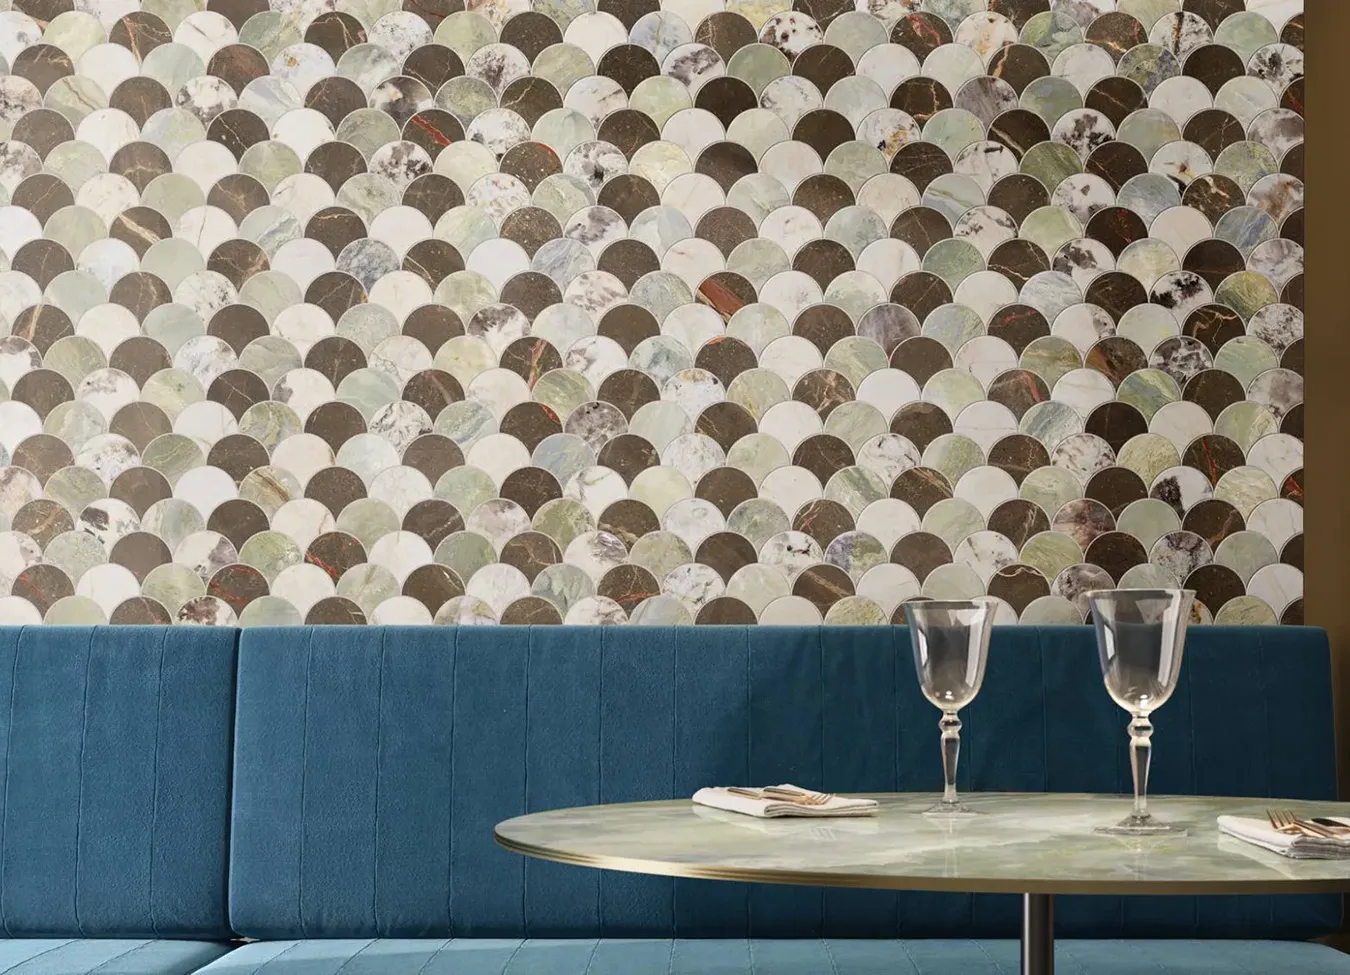 Стеновая керамическая плитка под мрамор с мозаичным узором из коллекции 9cento в изысканном ресторане.